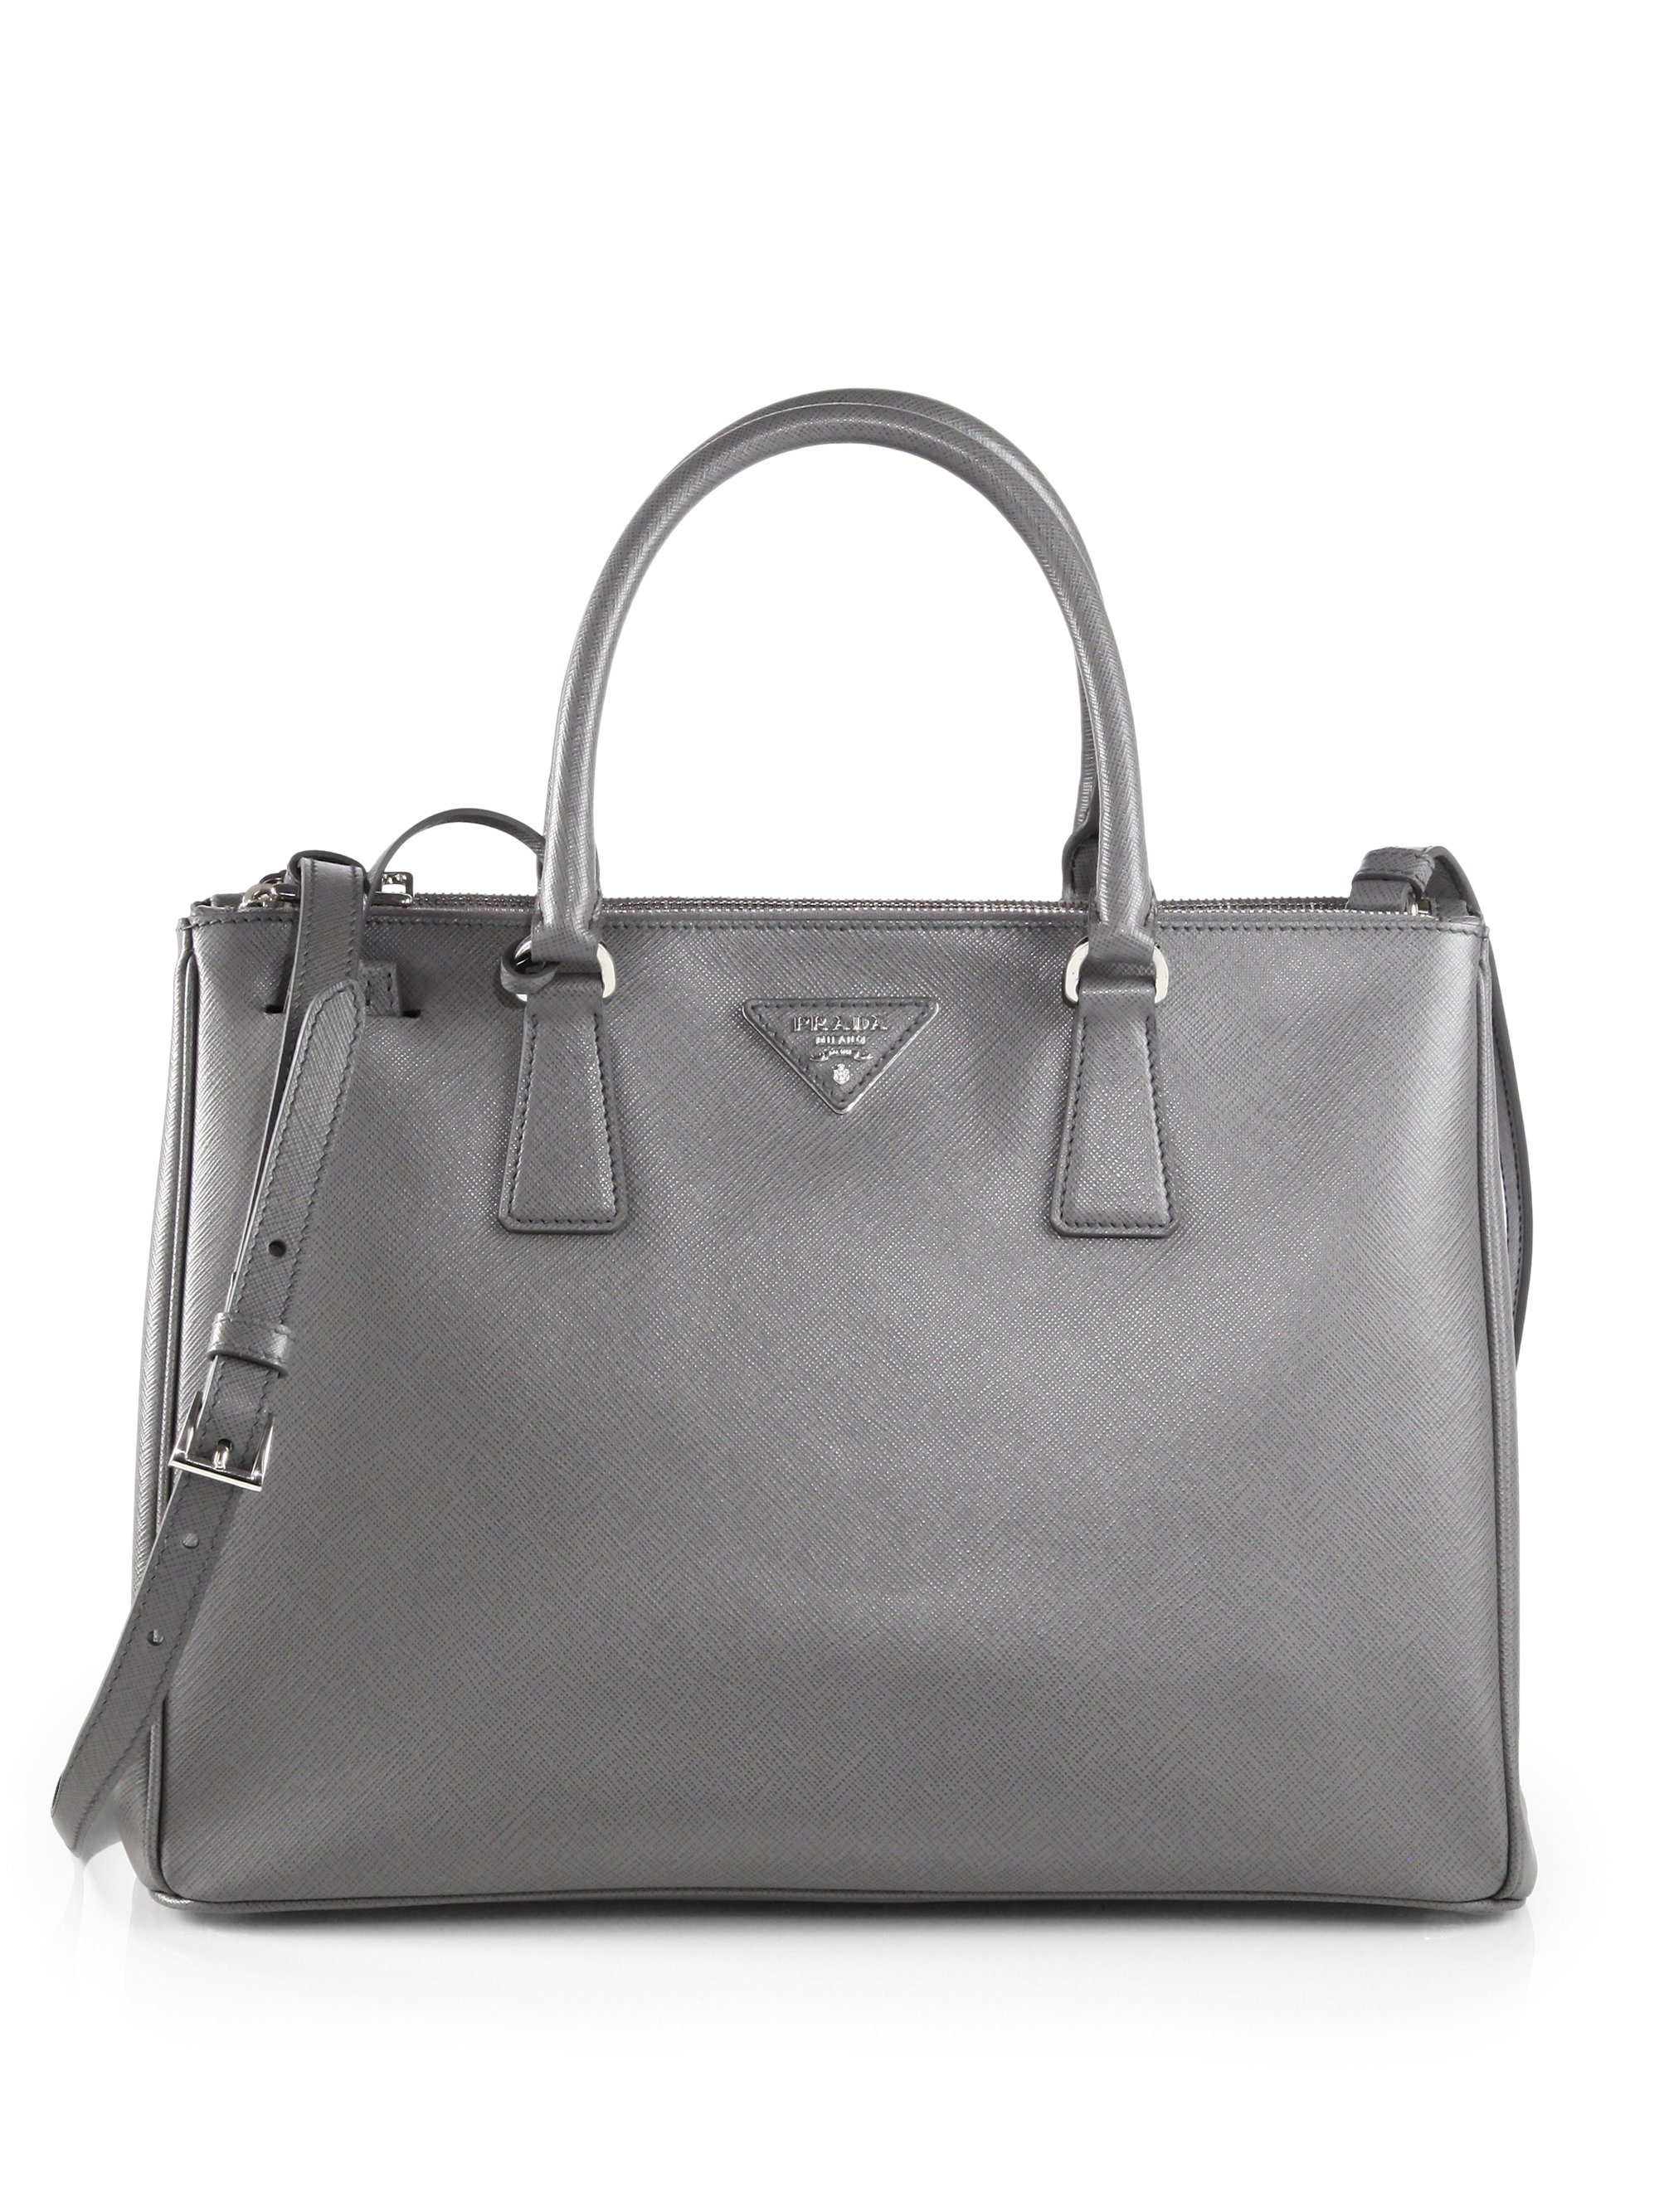 Prada Tote Bag: Prada Saffiano Lux Tote Bag Grey  